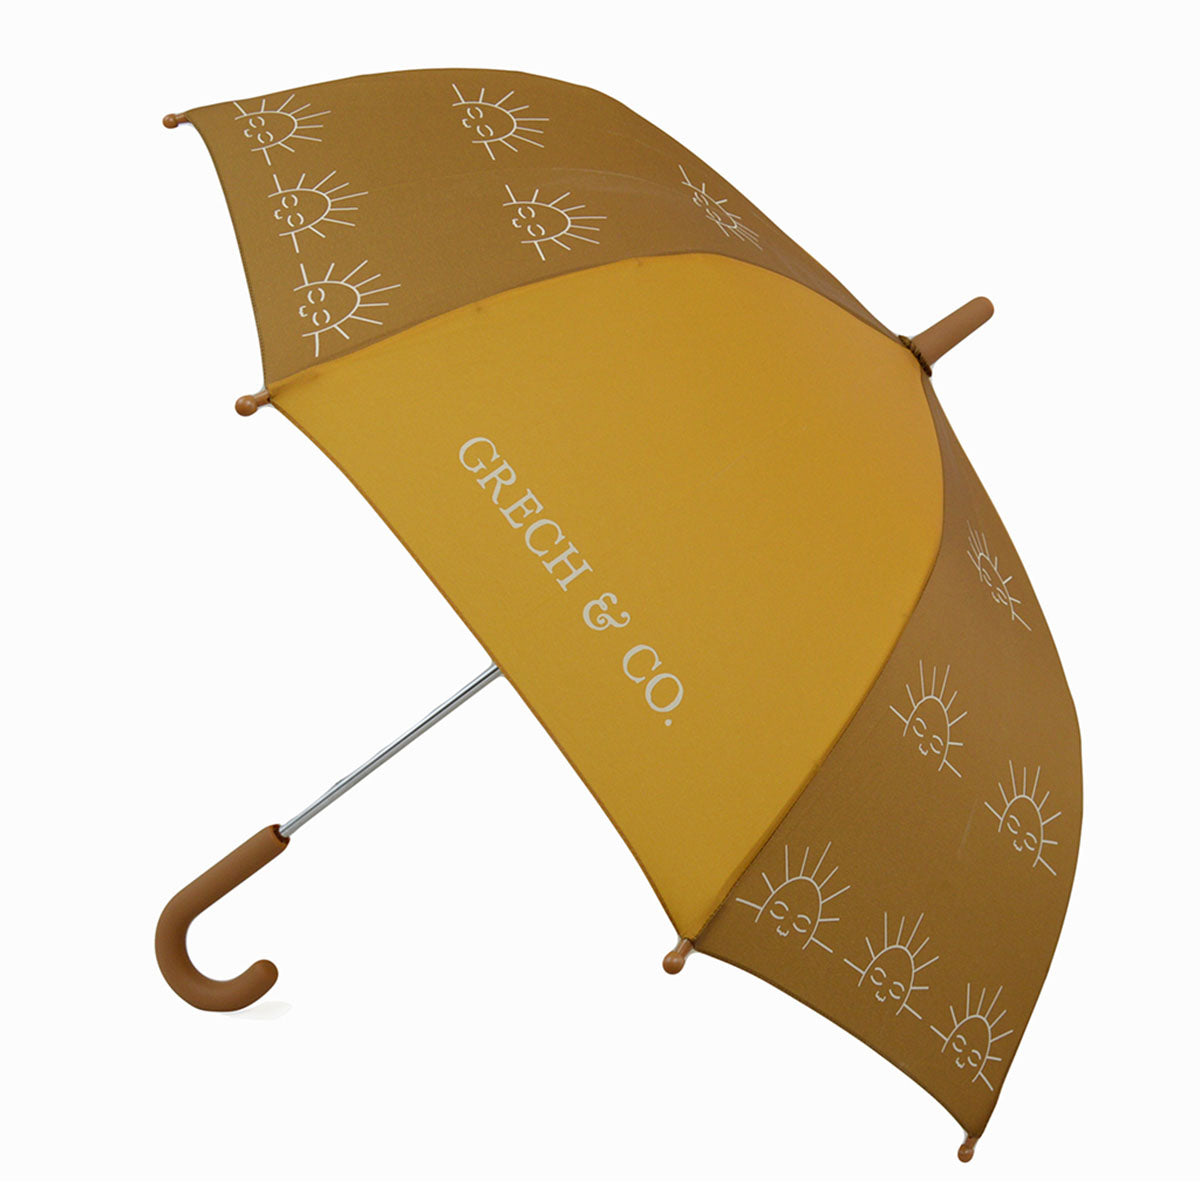 Bij regen én zonneschijn zorgt de duurzame Grech & co. paraplu kids wheat ervoor dat je stijlvol voor de dag komt. Leuk voor kinderen die willen matchen met hun grote broer/zus, mama of papa. VanZus